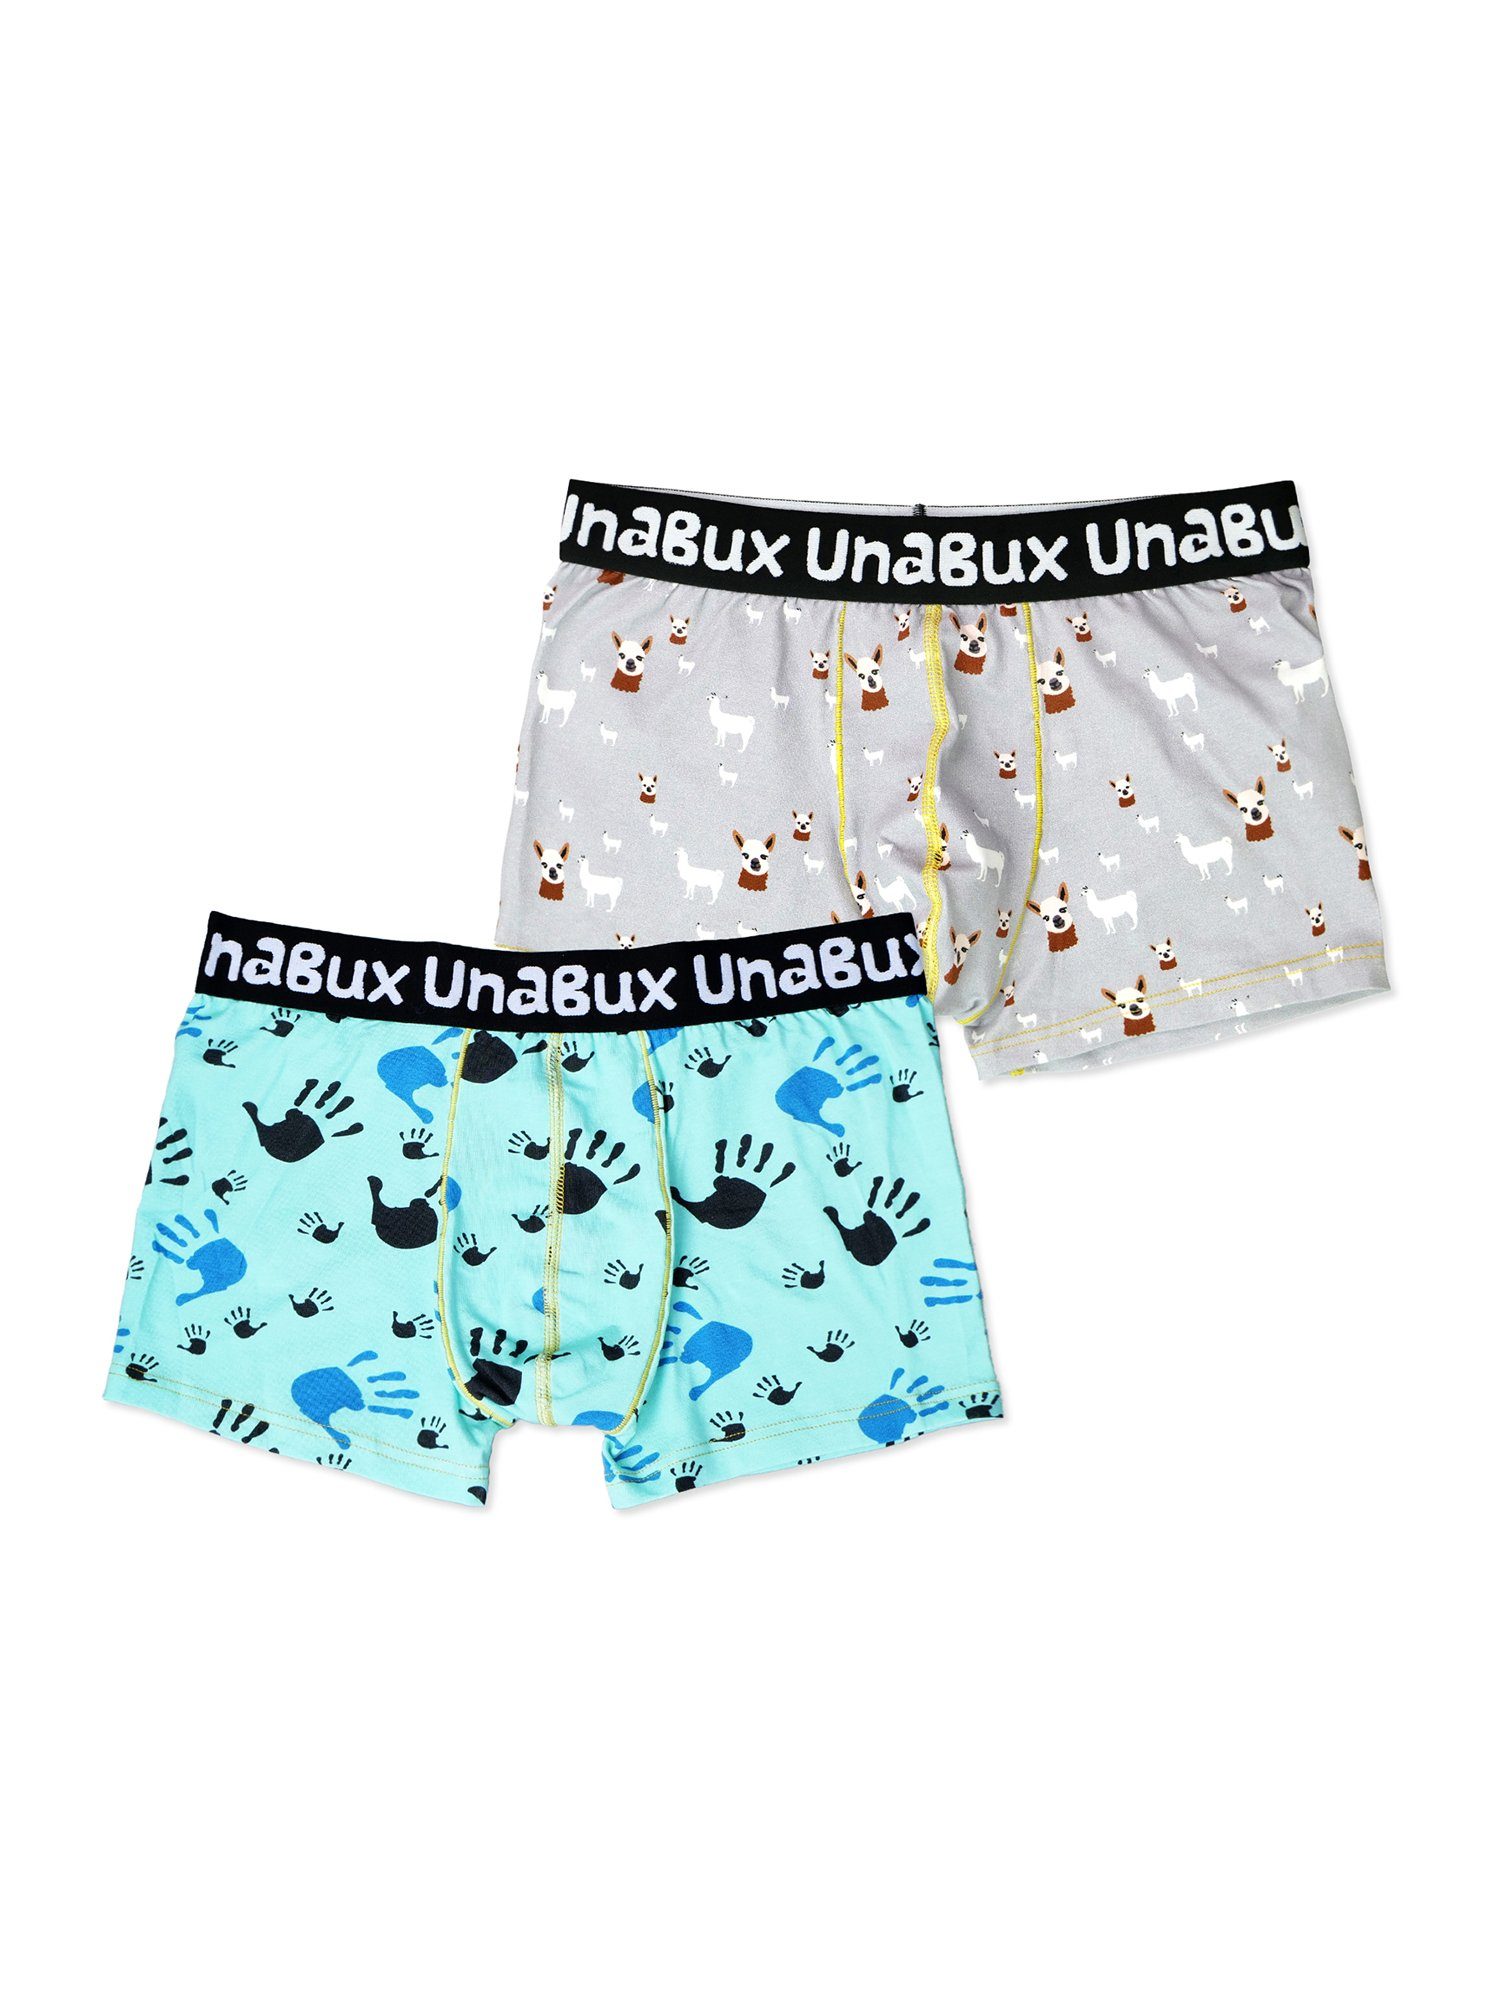 UnaBux Retro Pants Boxer Briefs FIVE FINGERS Mix (2-St) WOOLHEAD